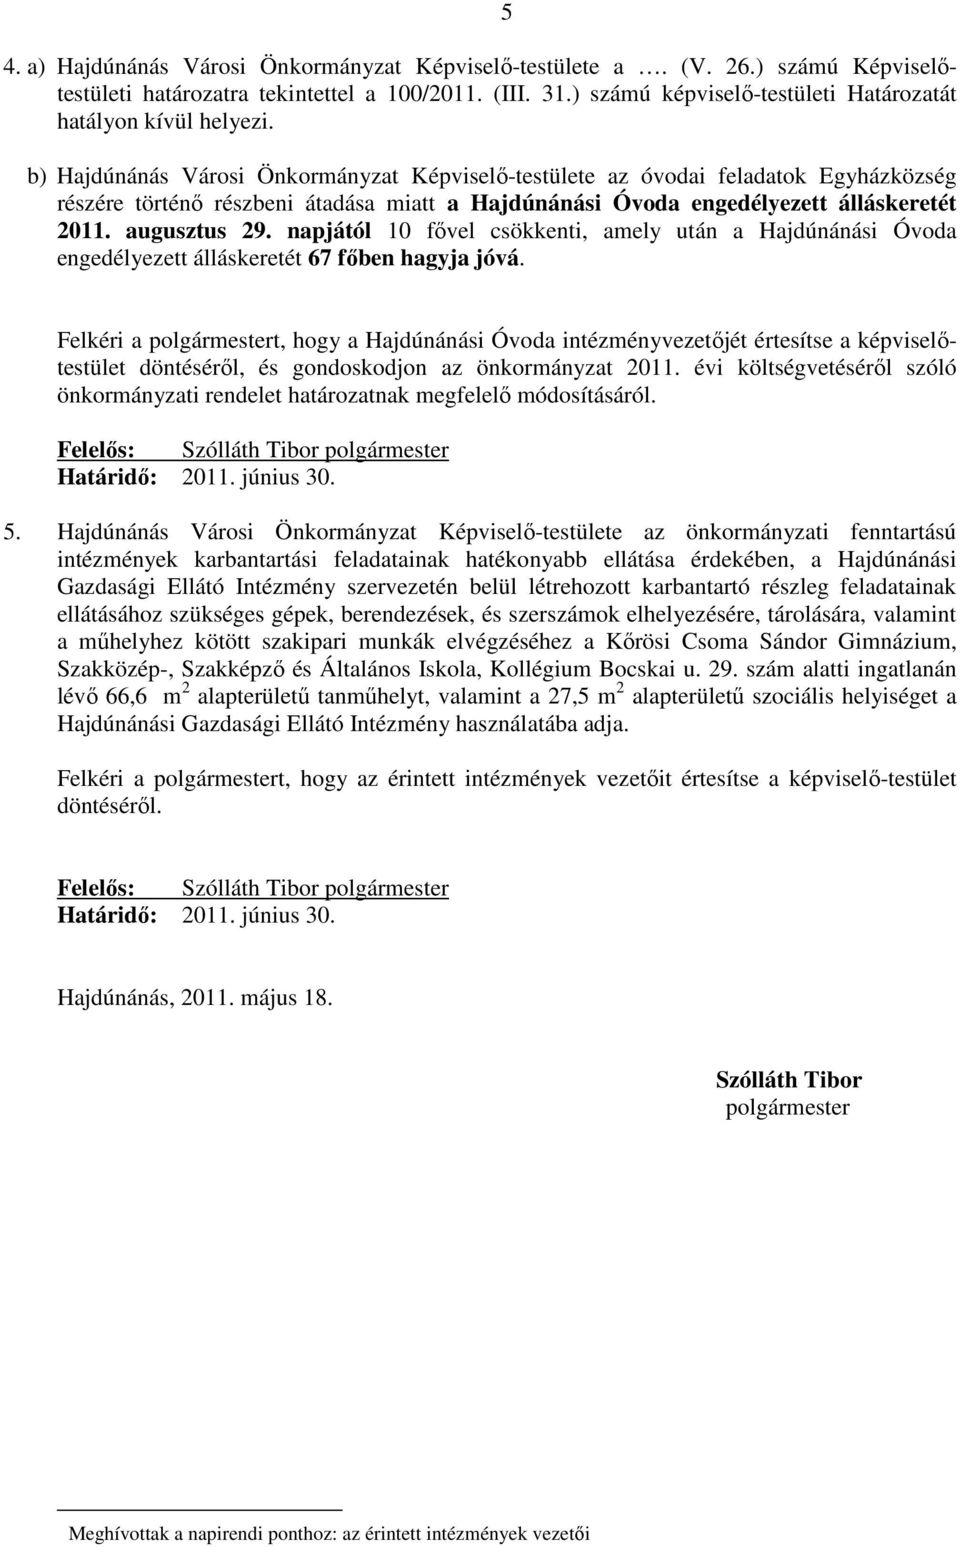 b) Hajdúnánás Városi Önkormányzat Képviselı-testülete az óvodai feladatok Egyházközség részére történı részbeni átadása miatt a engedélyezett álláskeretét 2011. augusztus 29.